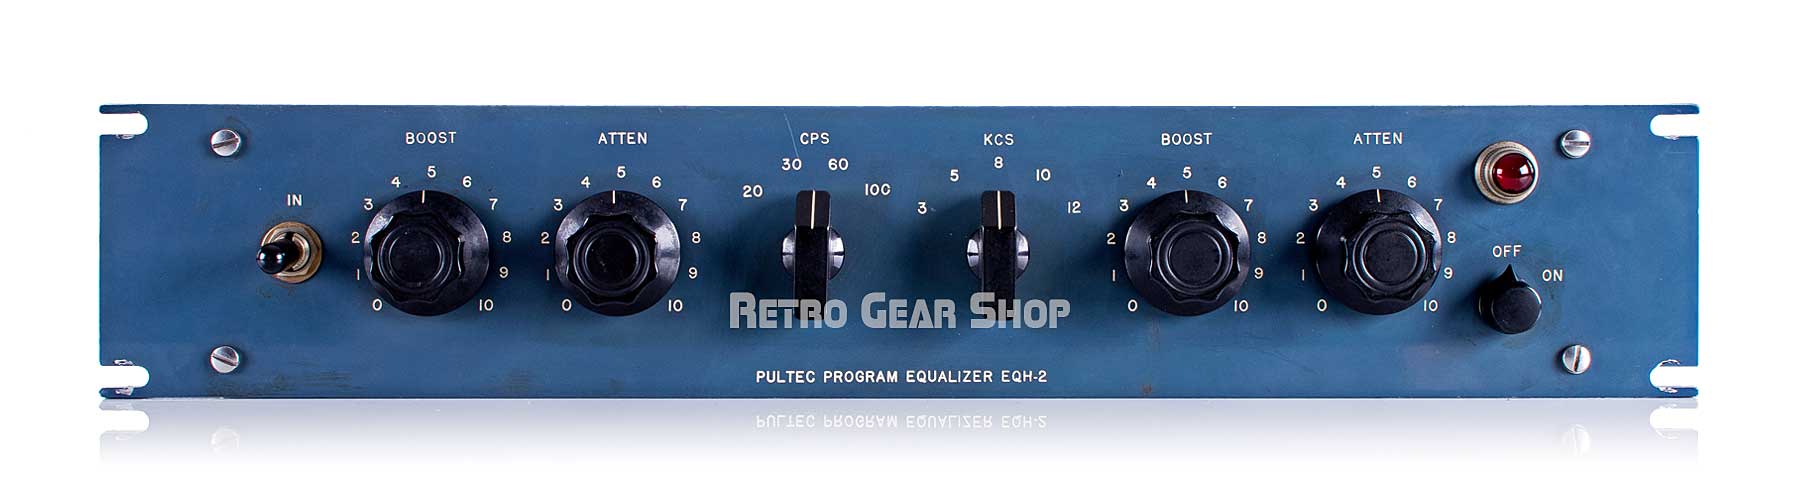 Pultec Program Equalizer EQH-2 Vintage Serviced 